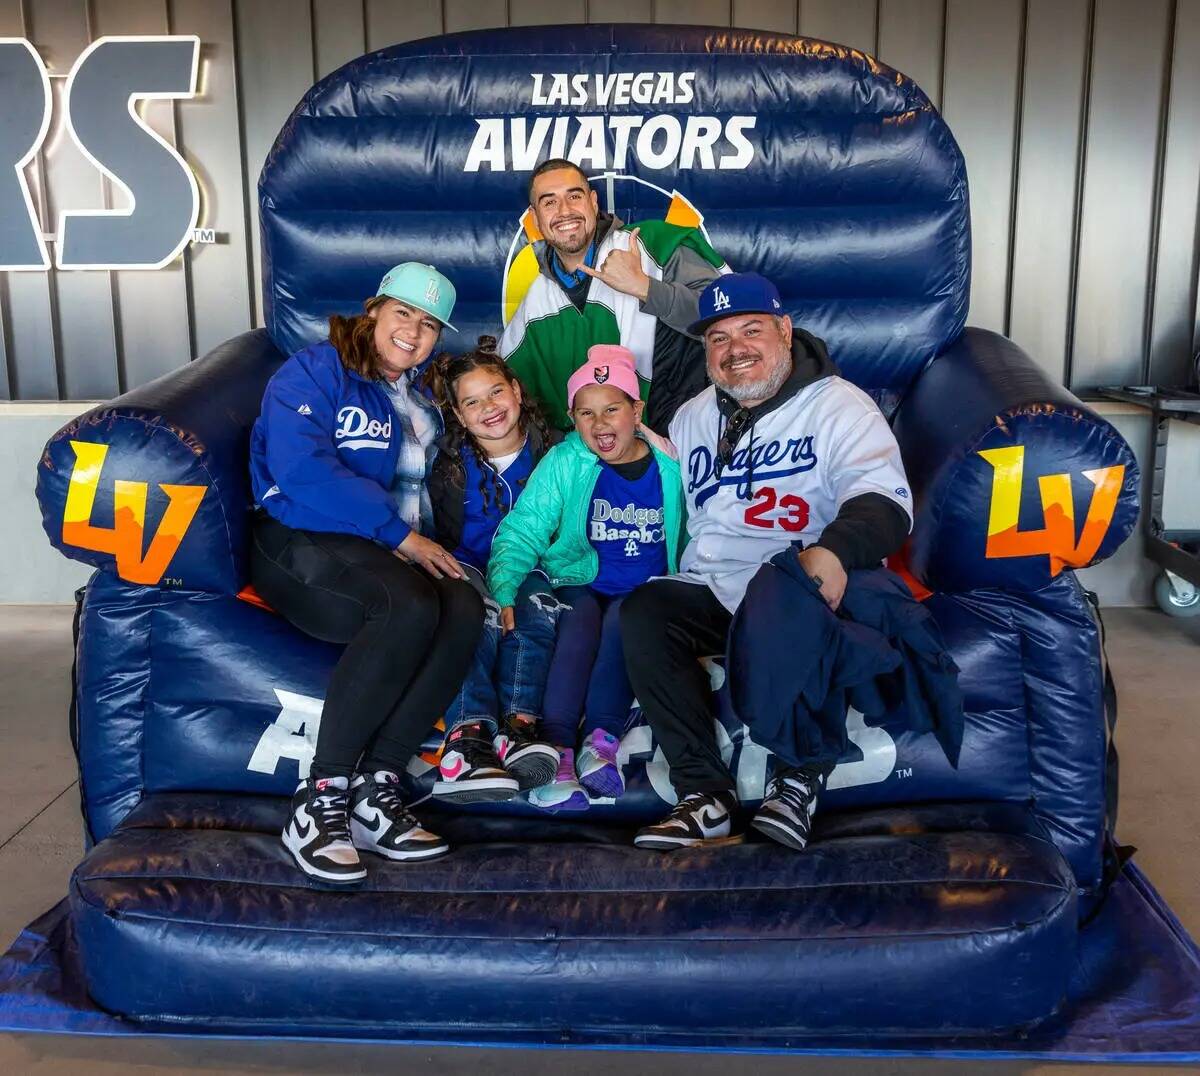 La familia Ortiz toma su turno en la silla gigante antes de la primera entrada de los Aviators ...